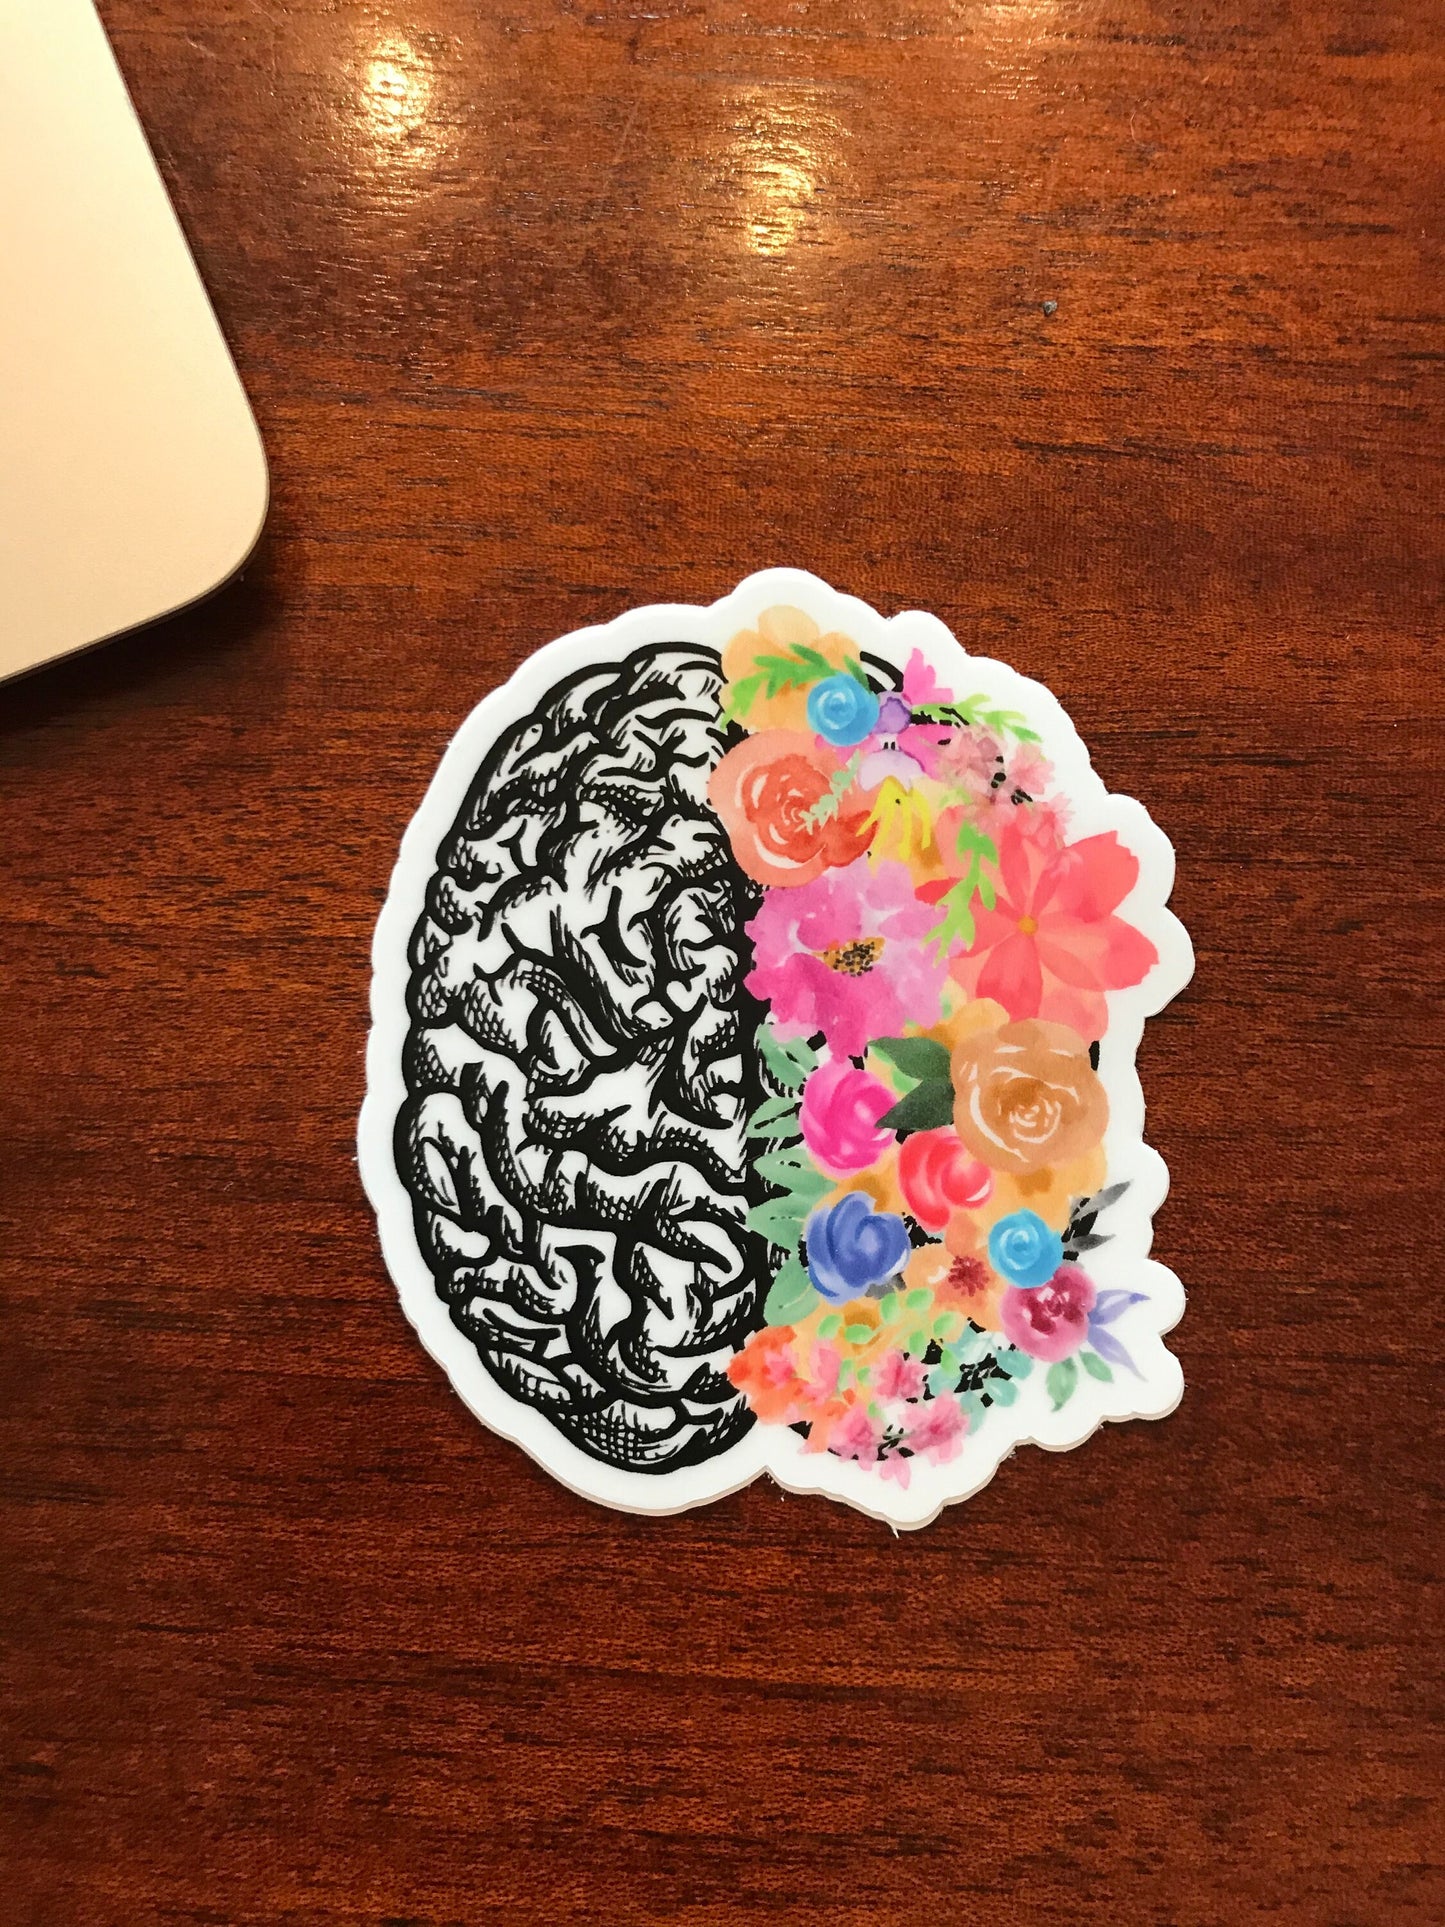 floral brain magnet for fridge, brain cancer survivor gift, neurodiversity magnet, cute whiteboard magnet for teacher, therapist gift mental